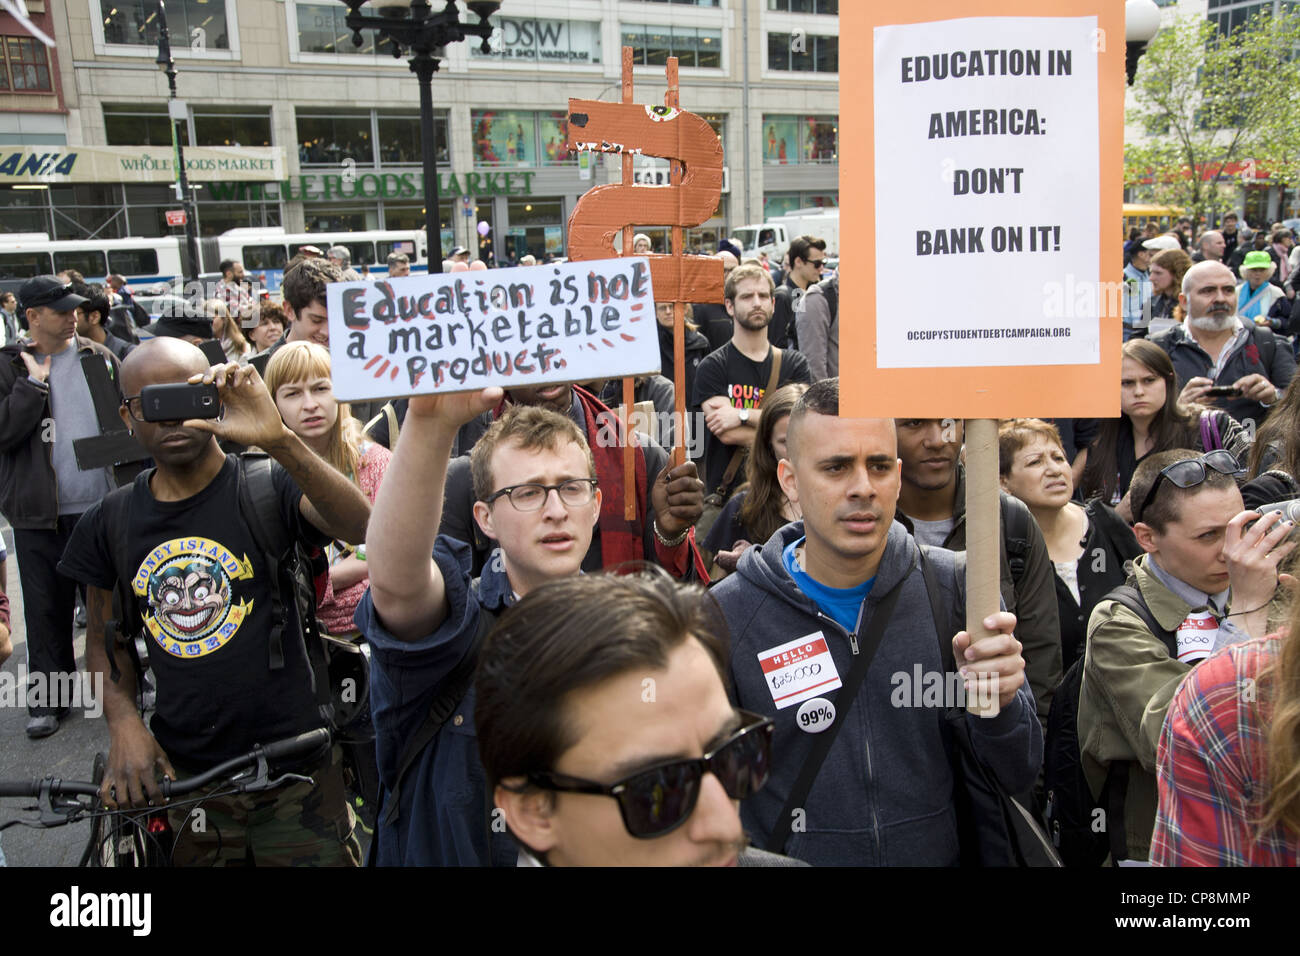 Gli studenti, laureati e gli attivisti al rally di Union Square a New York contro le banche sfruttando gli studenti con i crediti per l'istruzione. Foto Stock